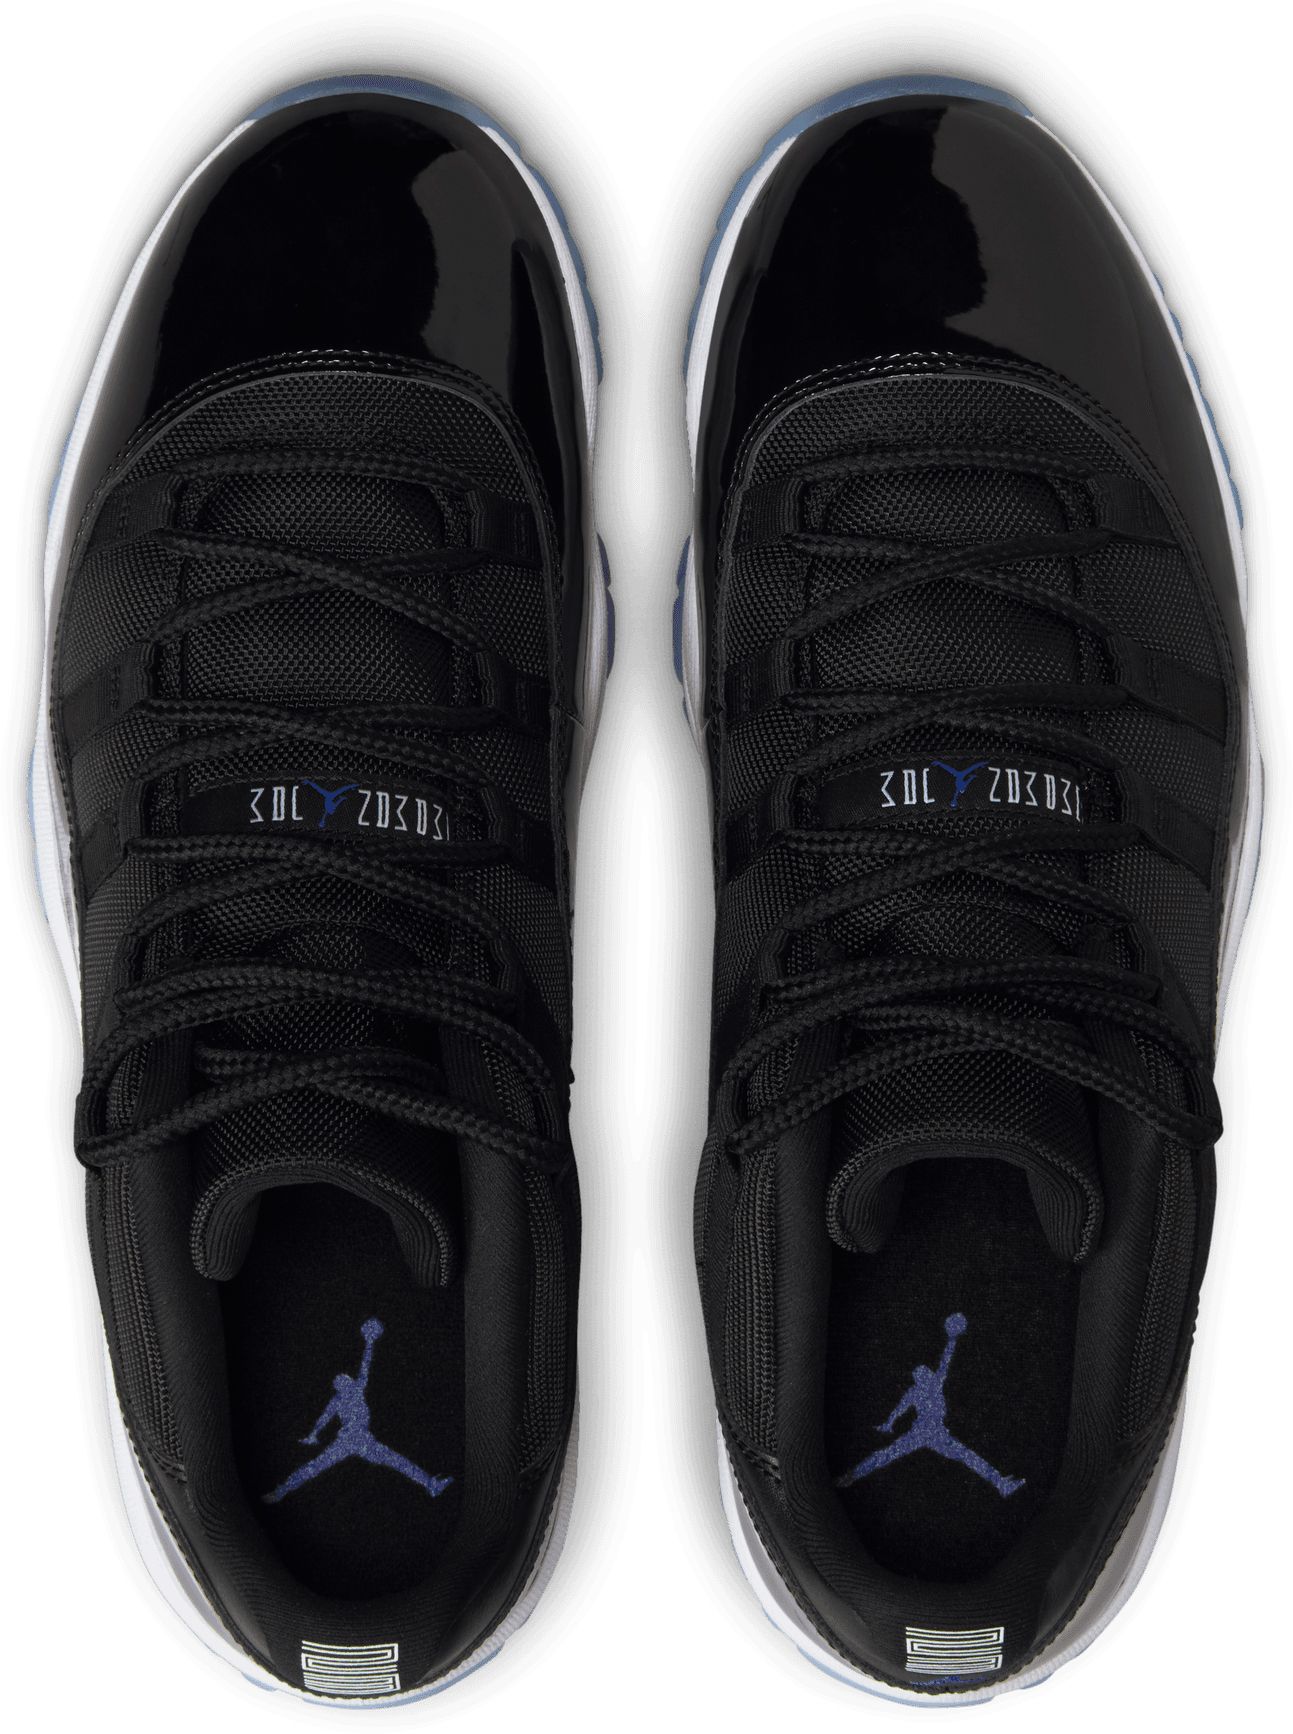 Air Jordan 11 Retro Low Basketball Shoes | Dick's Sporting Goods